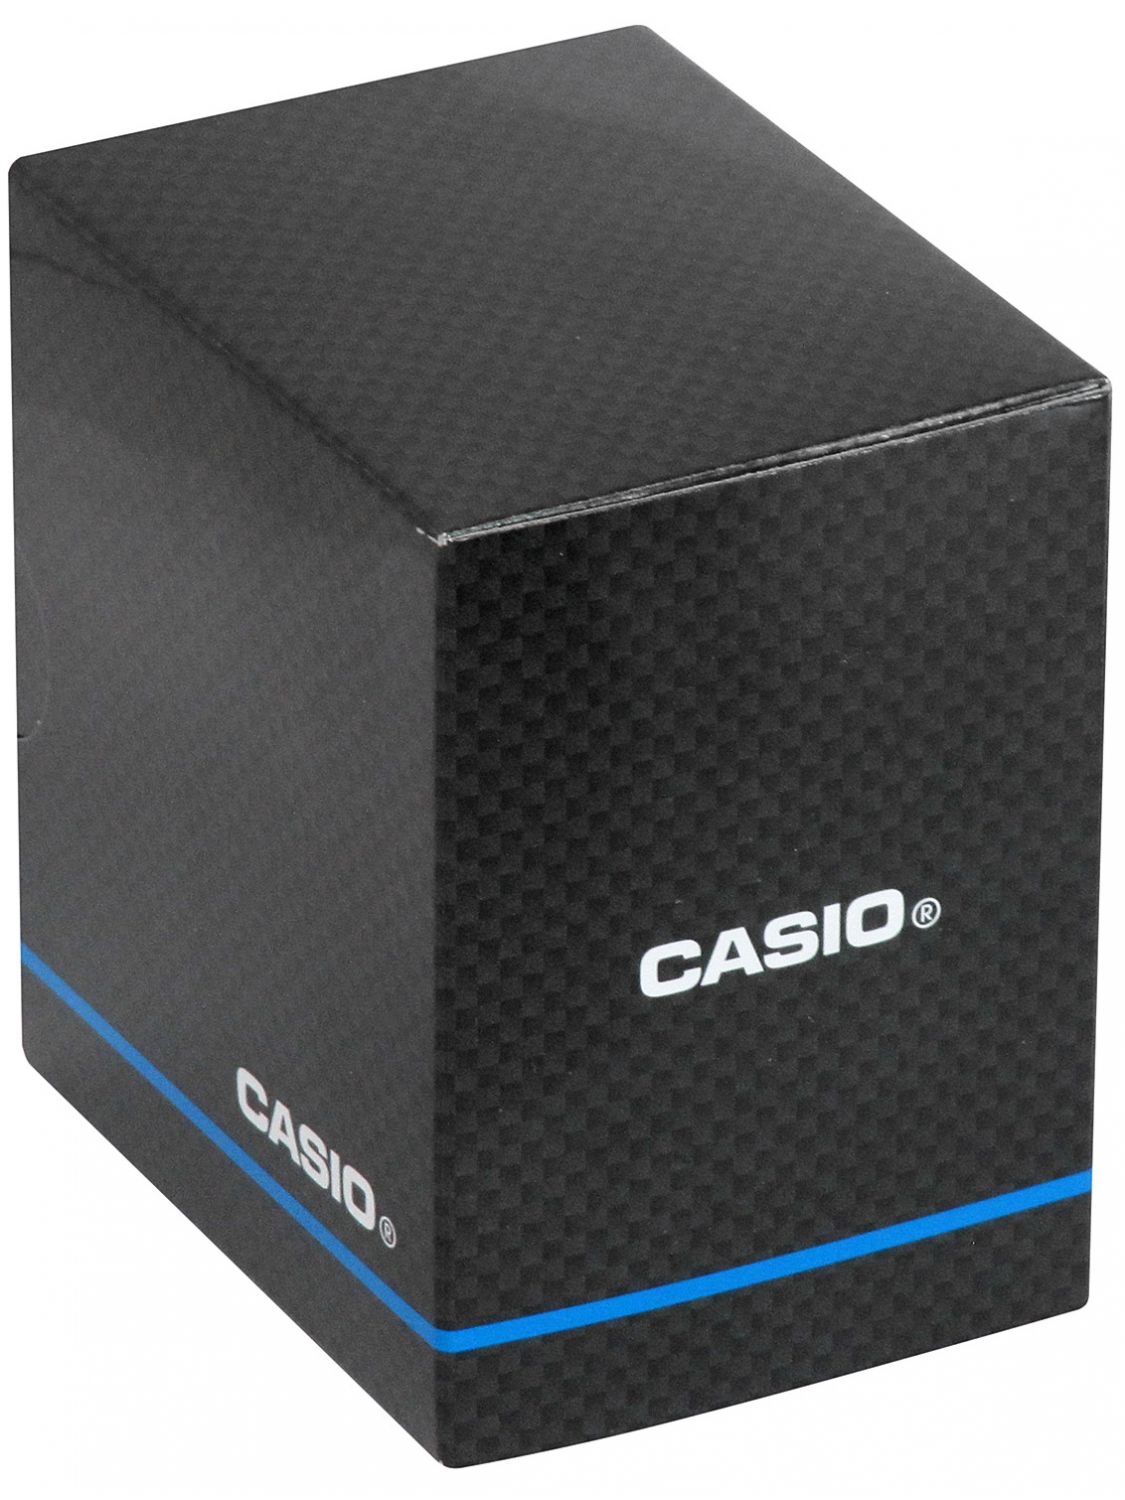 Casio Men's Watch Quartz Steel/Turquoise MTP-B145D-2A1VEF • uhrcenter